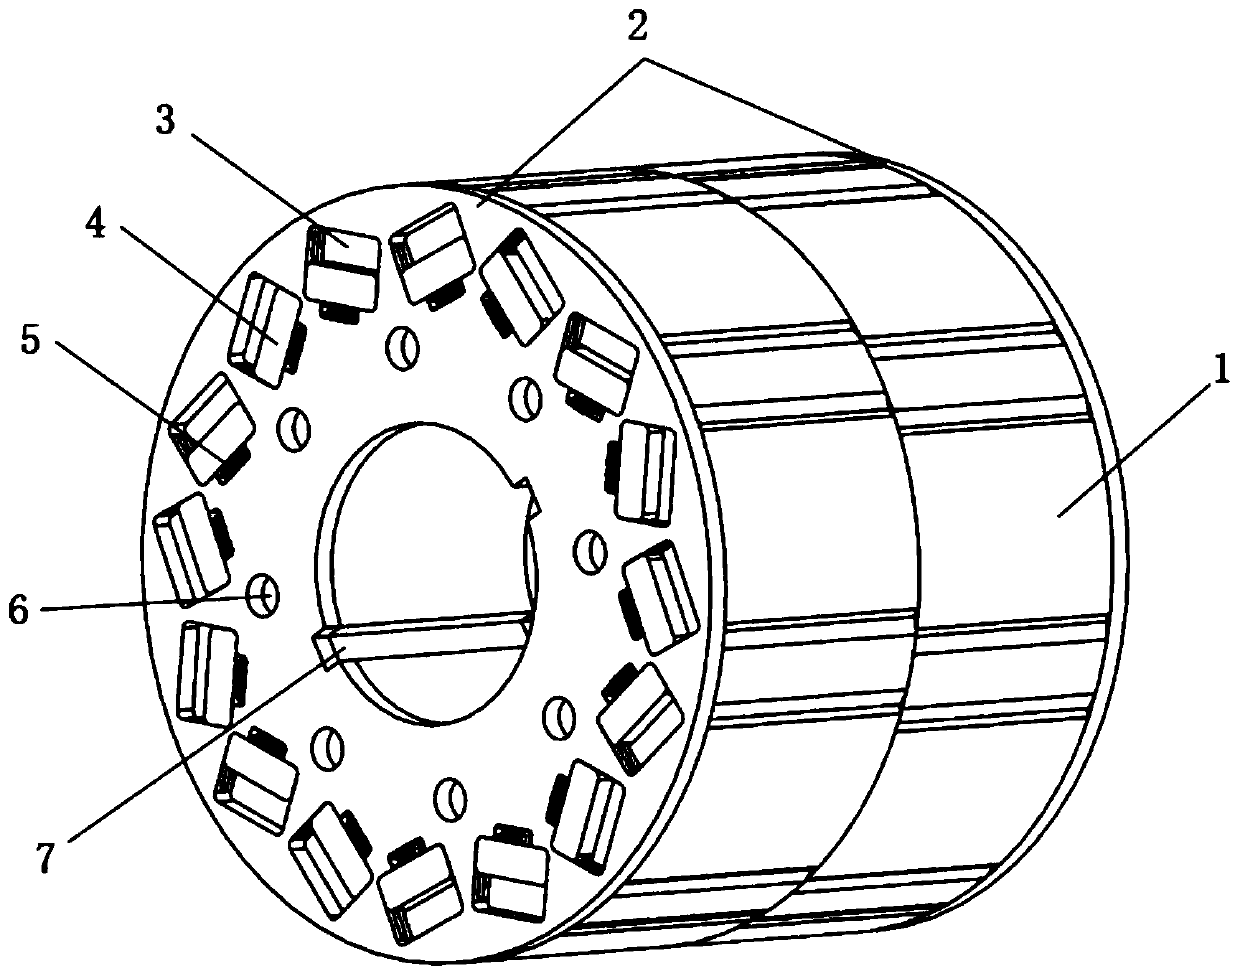 Flux-adjustable magnet vane structure for permanent magnet motor rotor